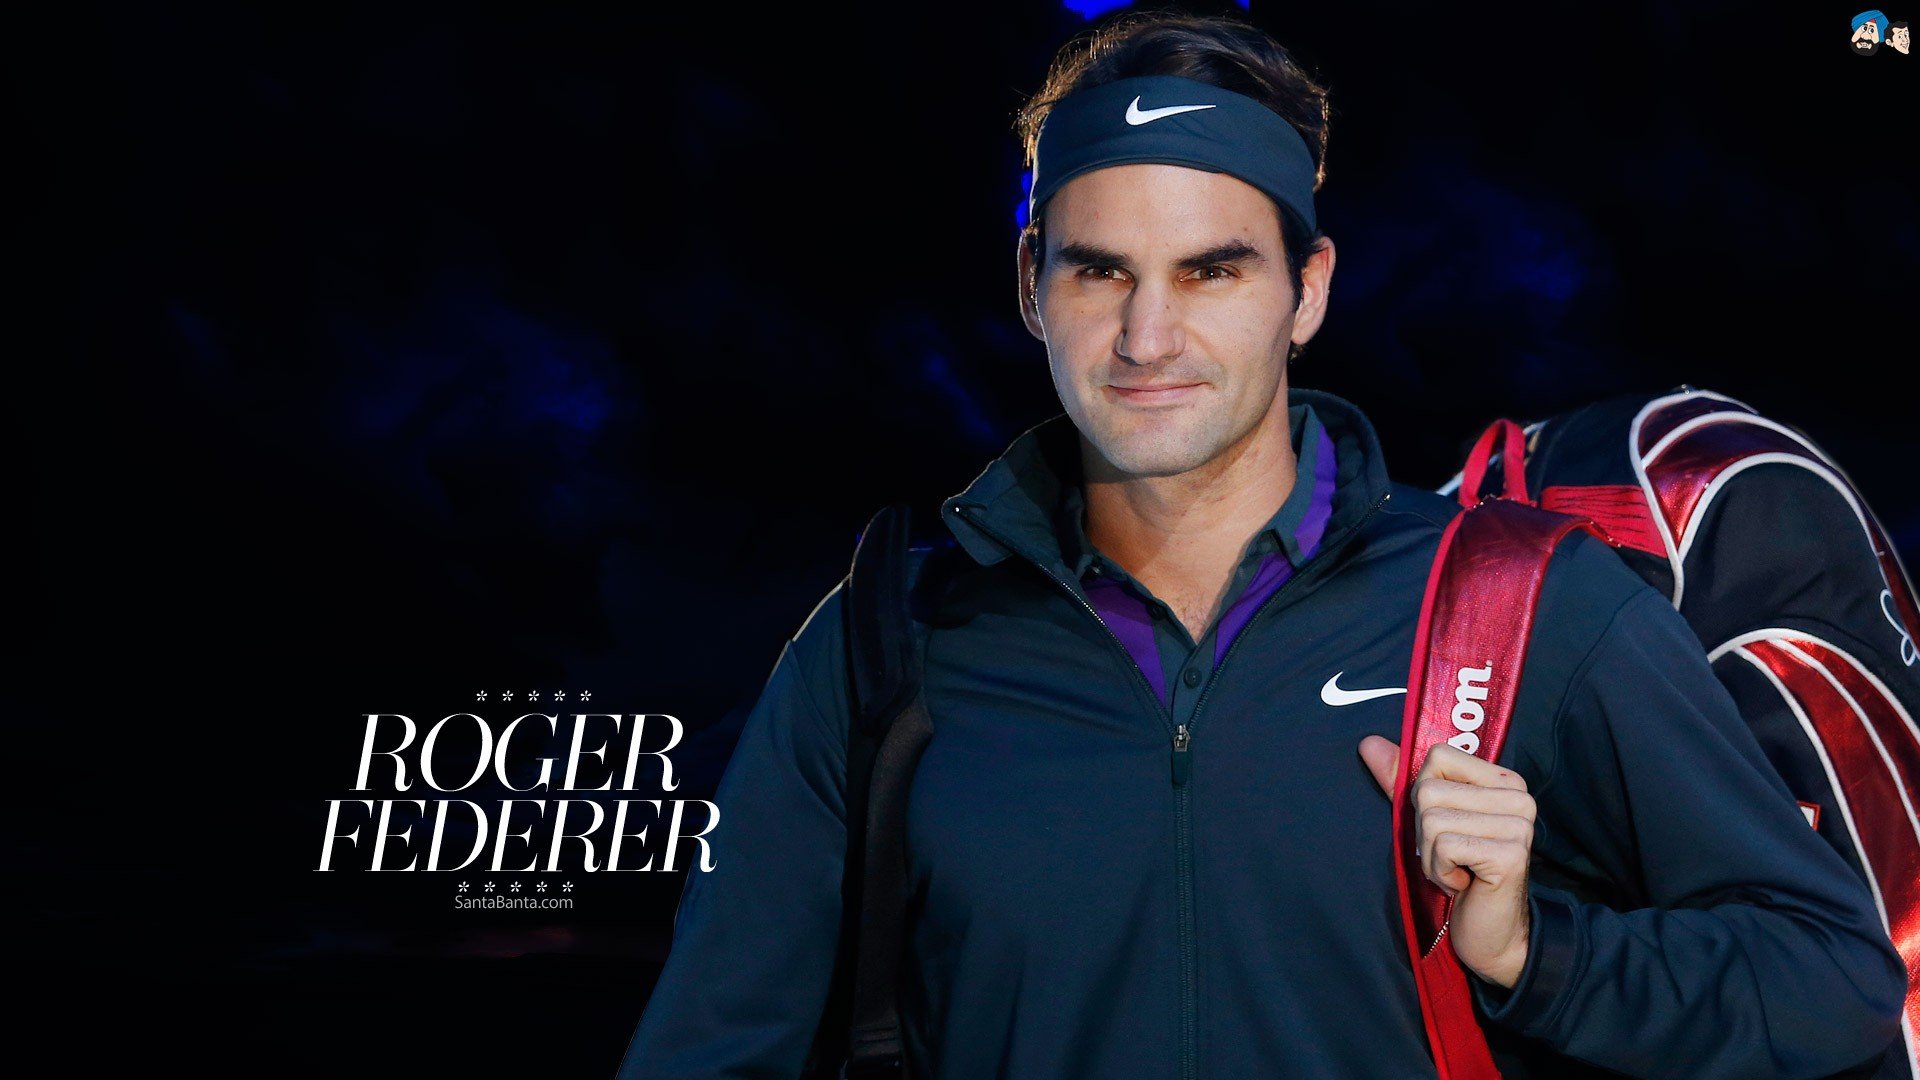 sports, Tennis, Roger, Federer, Tennis, Player Wallpapers HD / Desktop